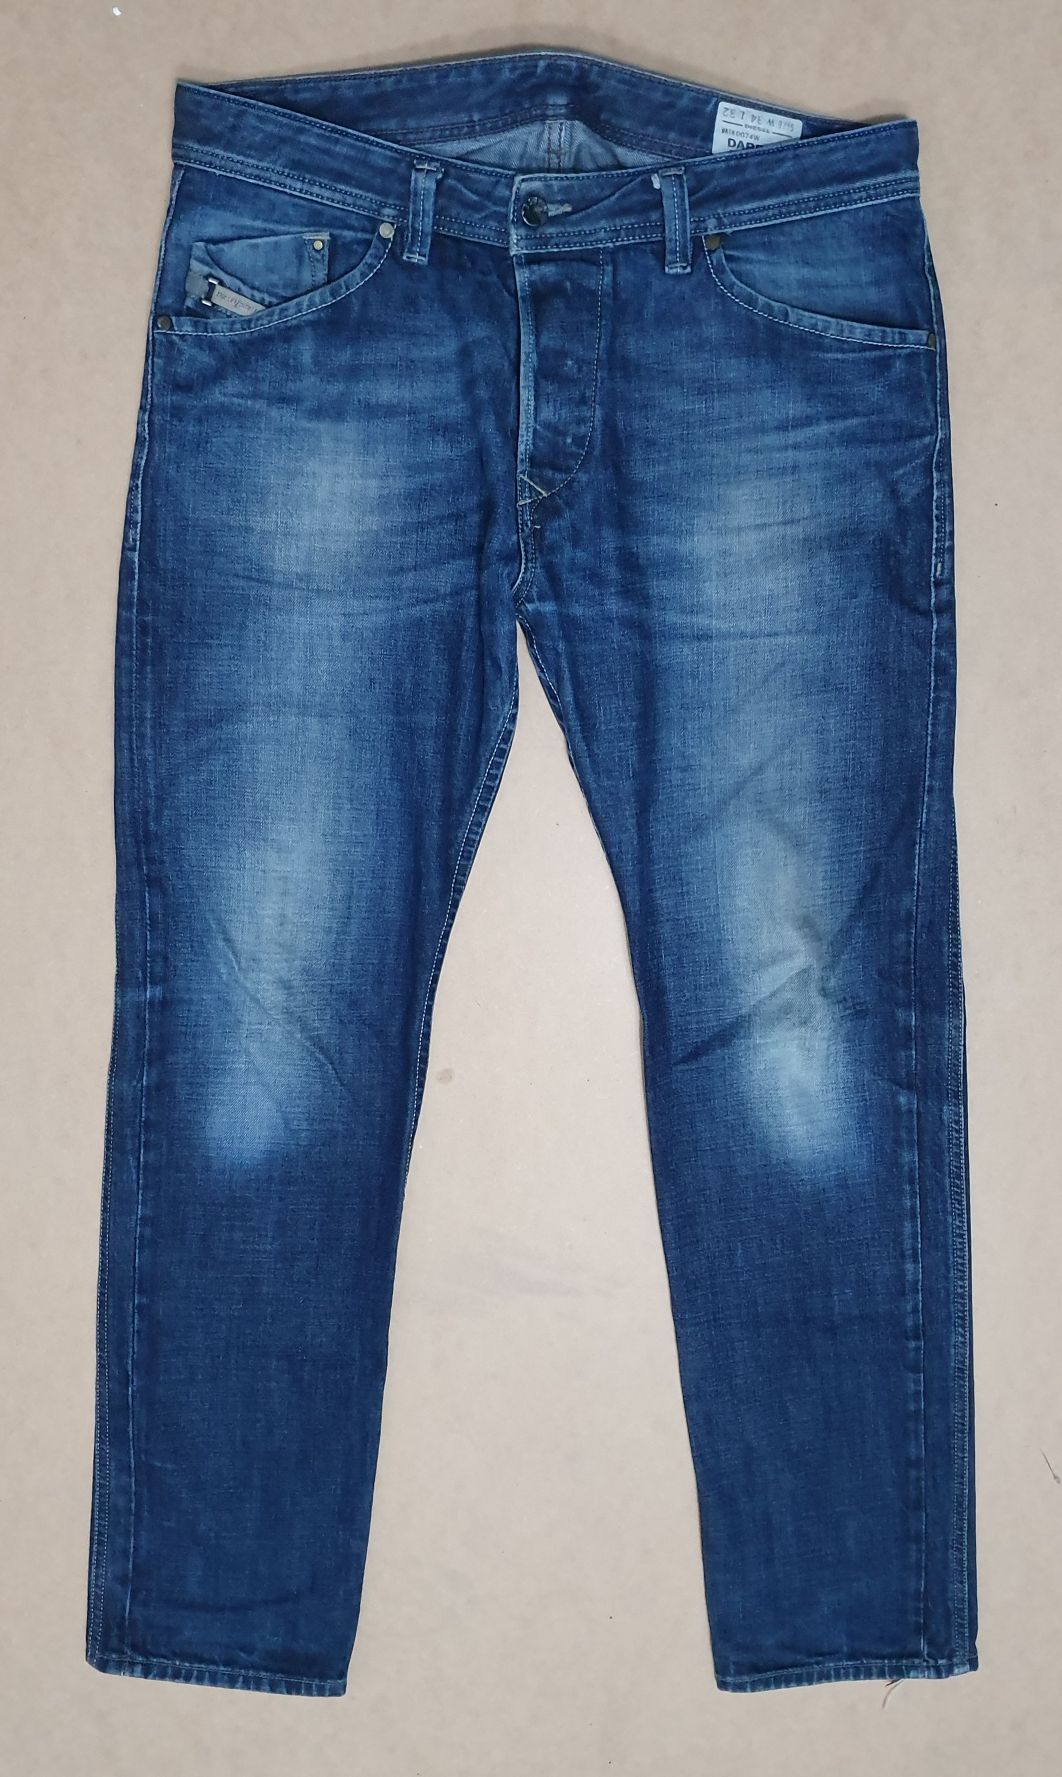 DIESEL DARRON roz. 34/32 pas 90-92 cm premium jeans italy